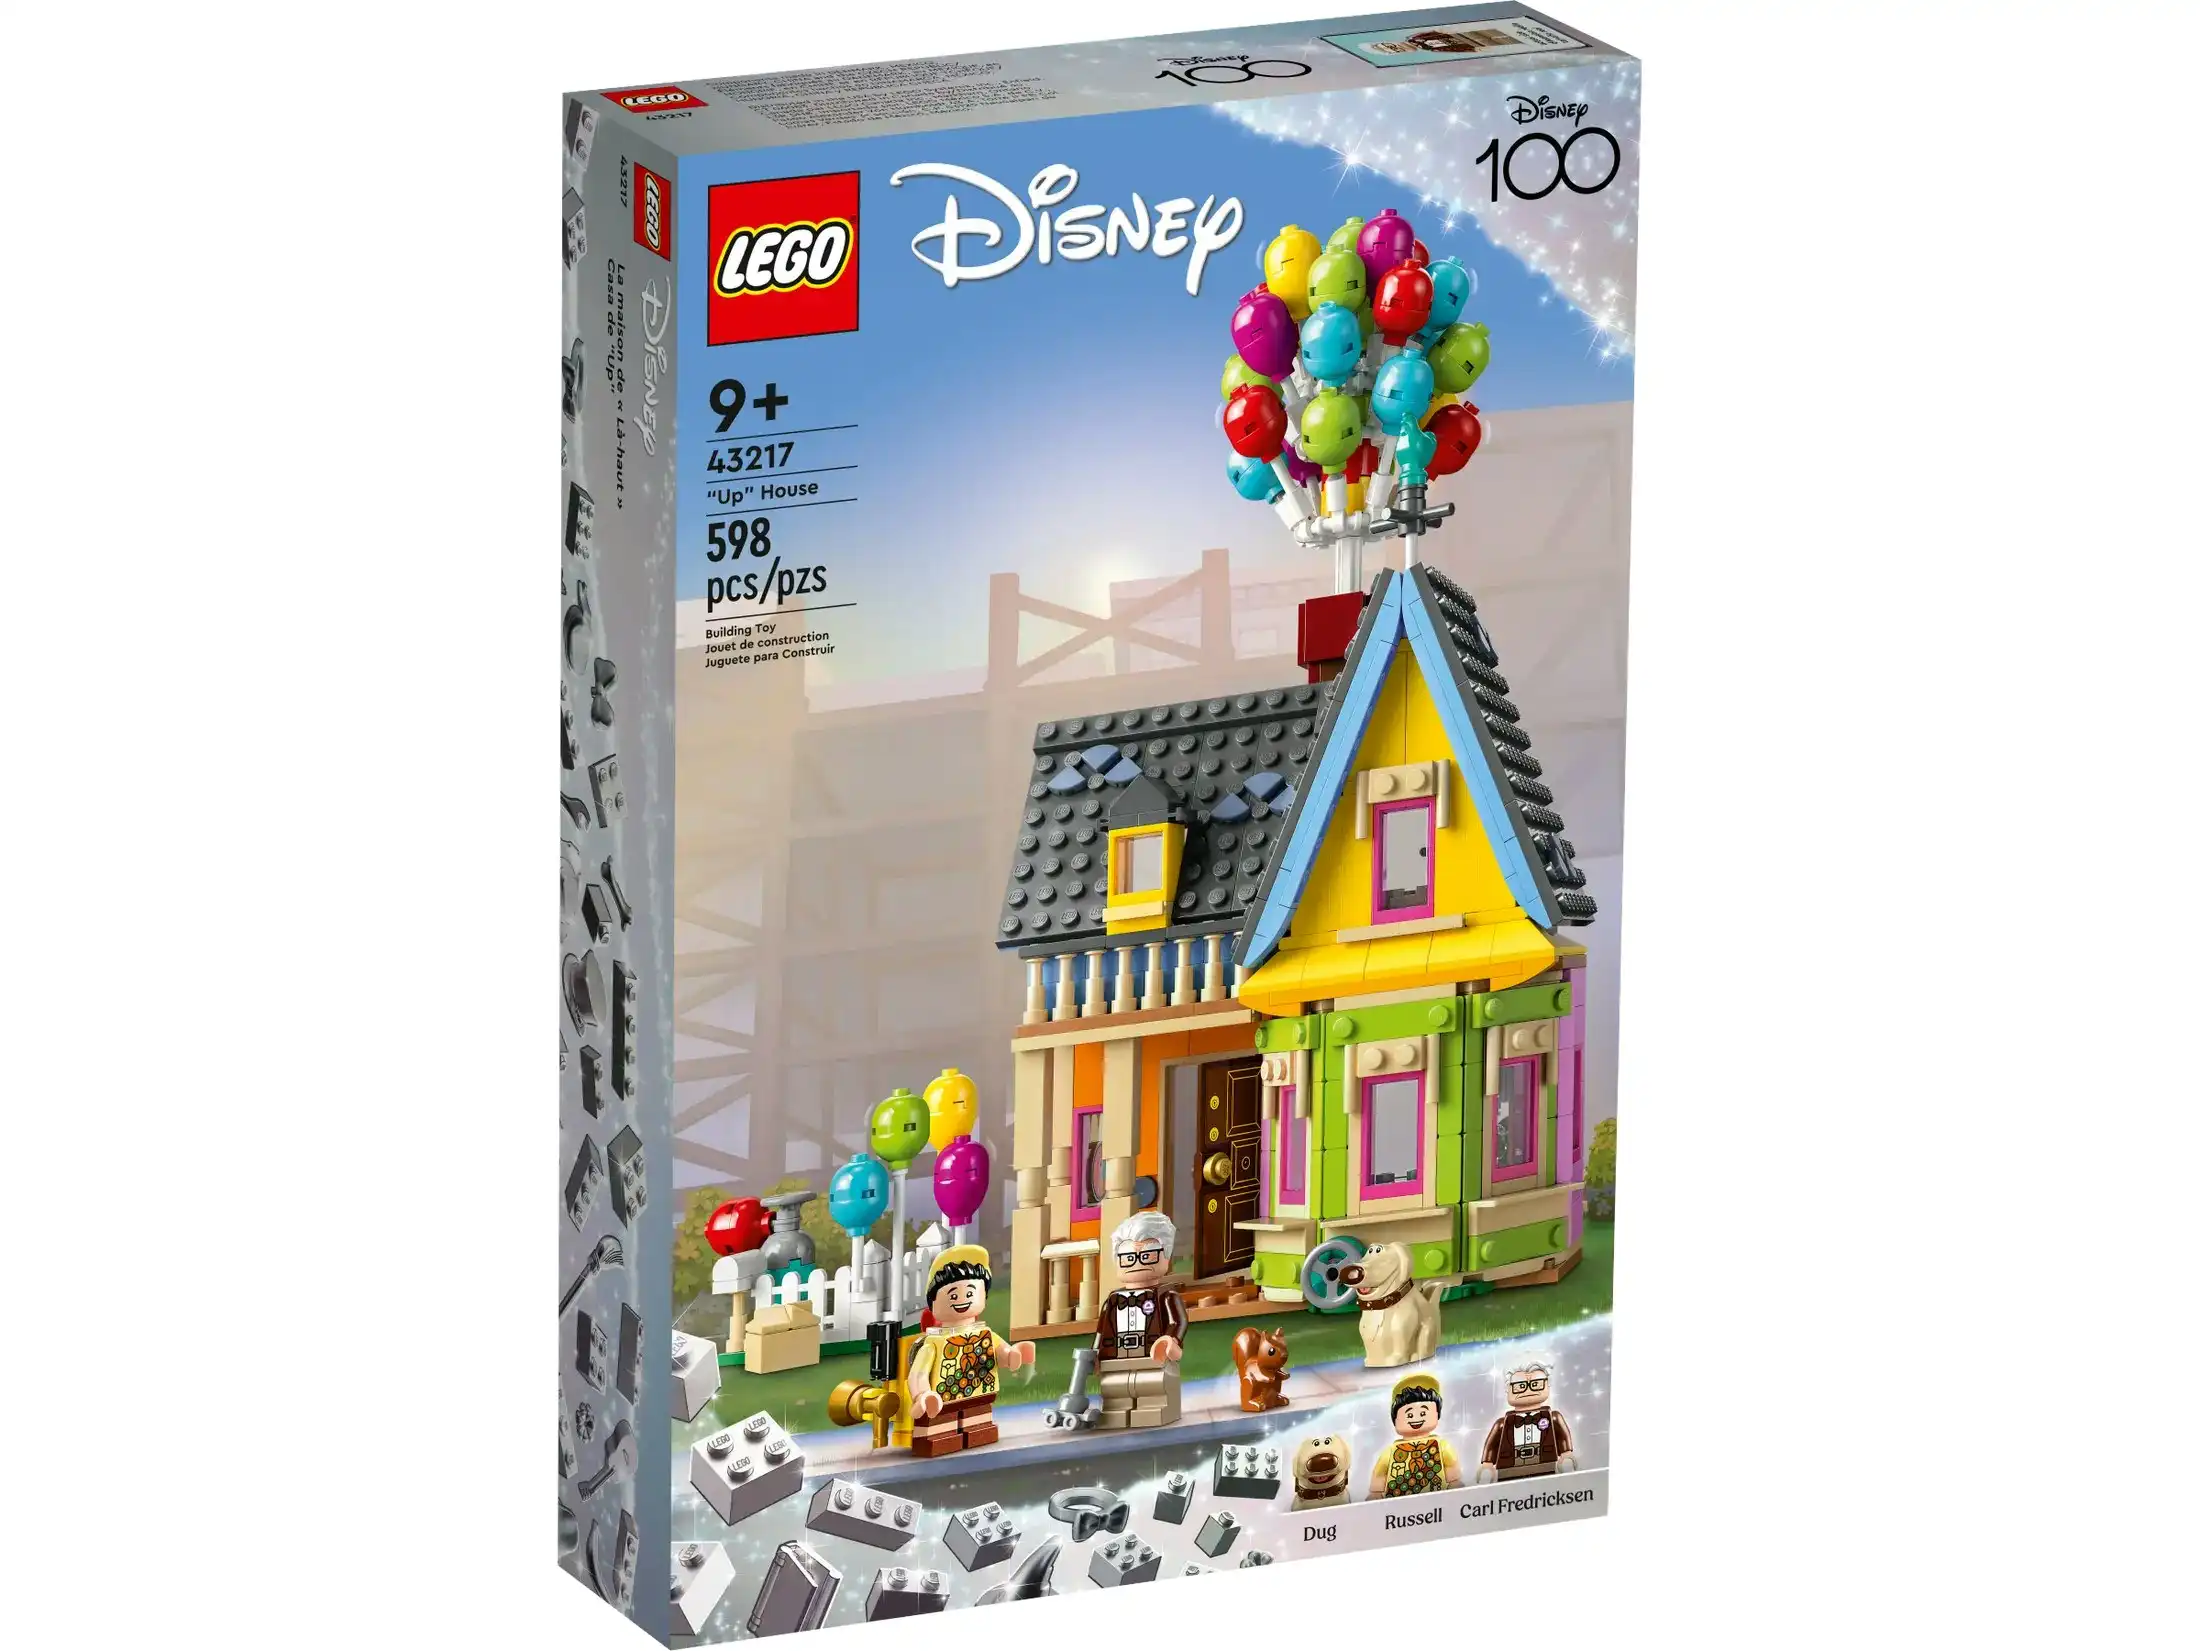 LEGO 43217 ‘Up’ House​ - Disney